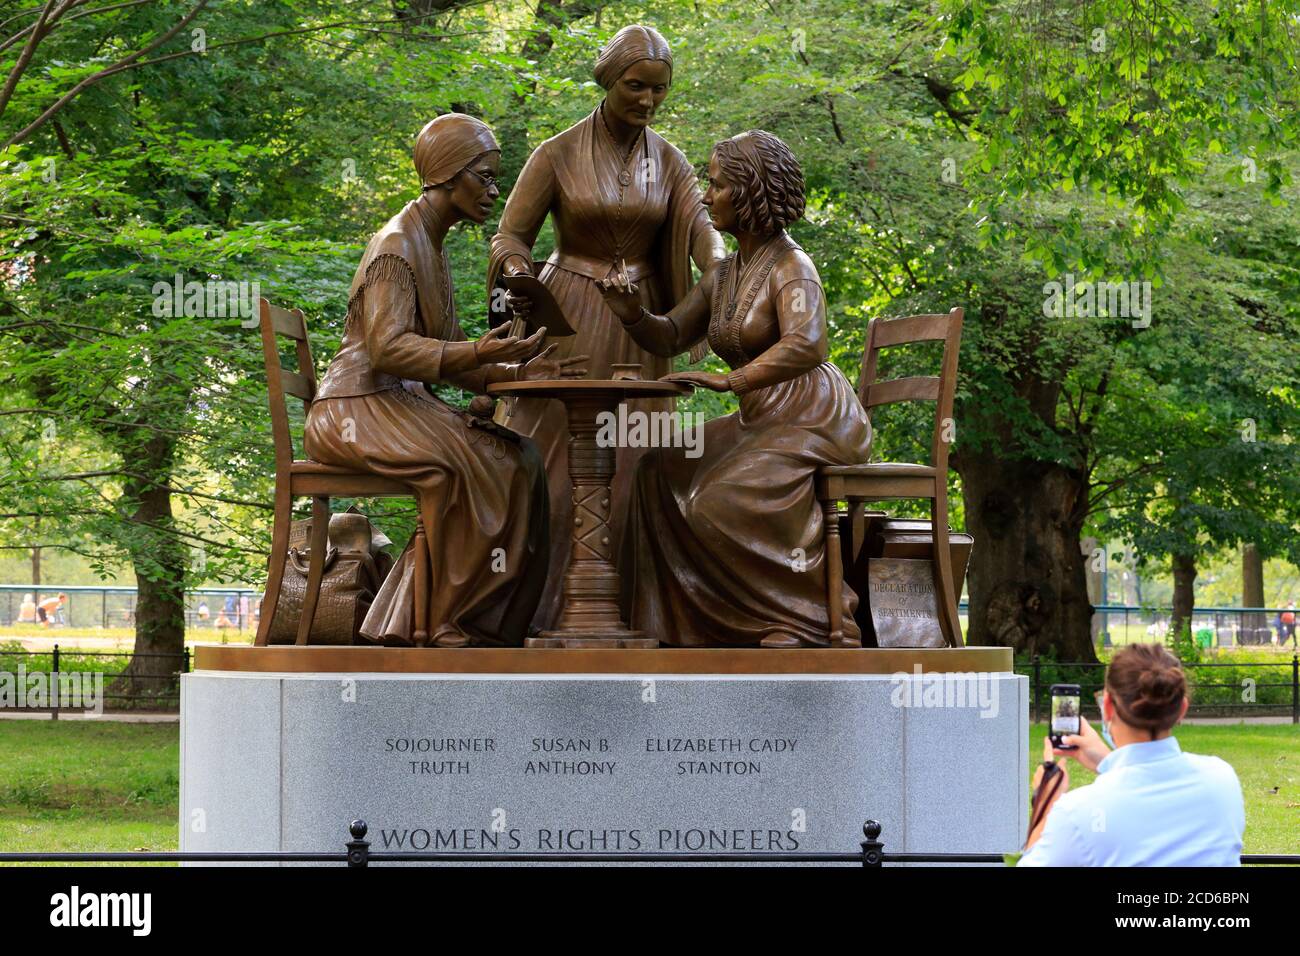 Une personne prend une photo par téléphone de la statue de bronze des « Women's Rights Pioneers », une sculpture de Meredith Bergmann à Central Park, New York, NY. Banque D'Images